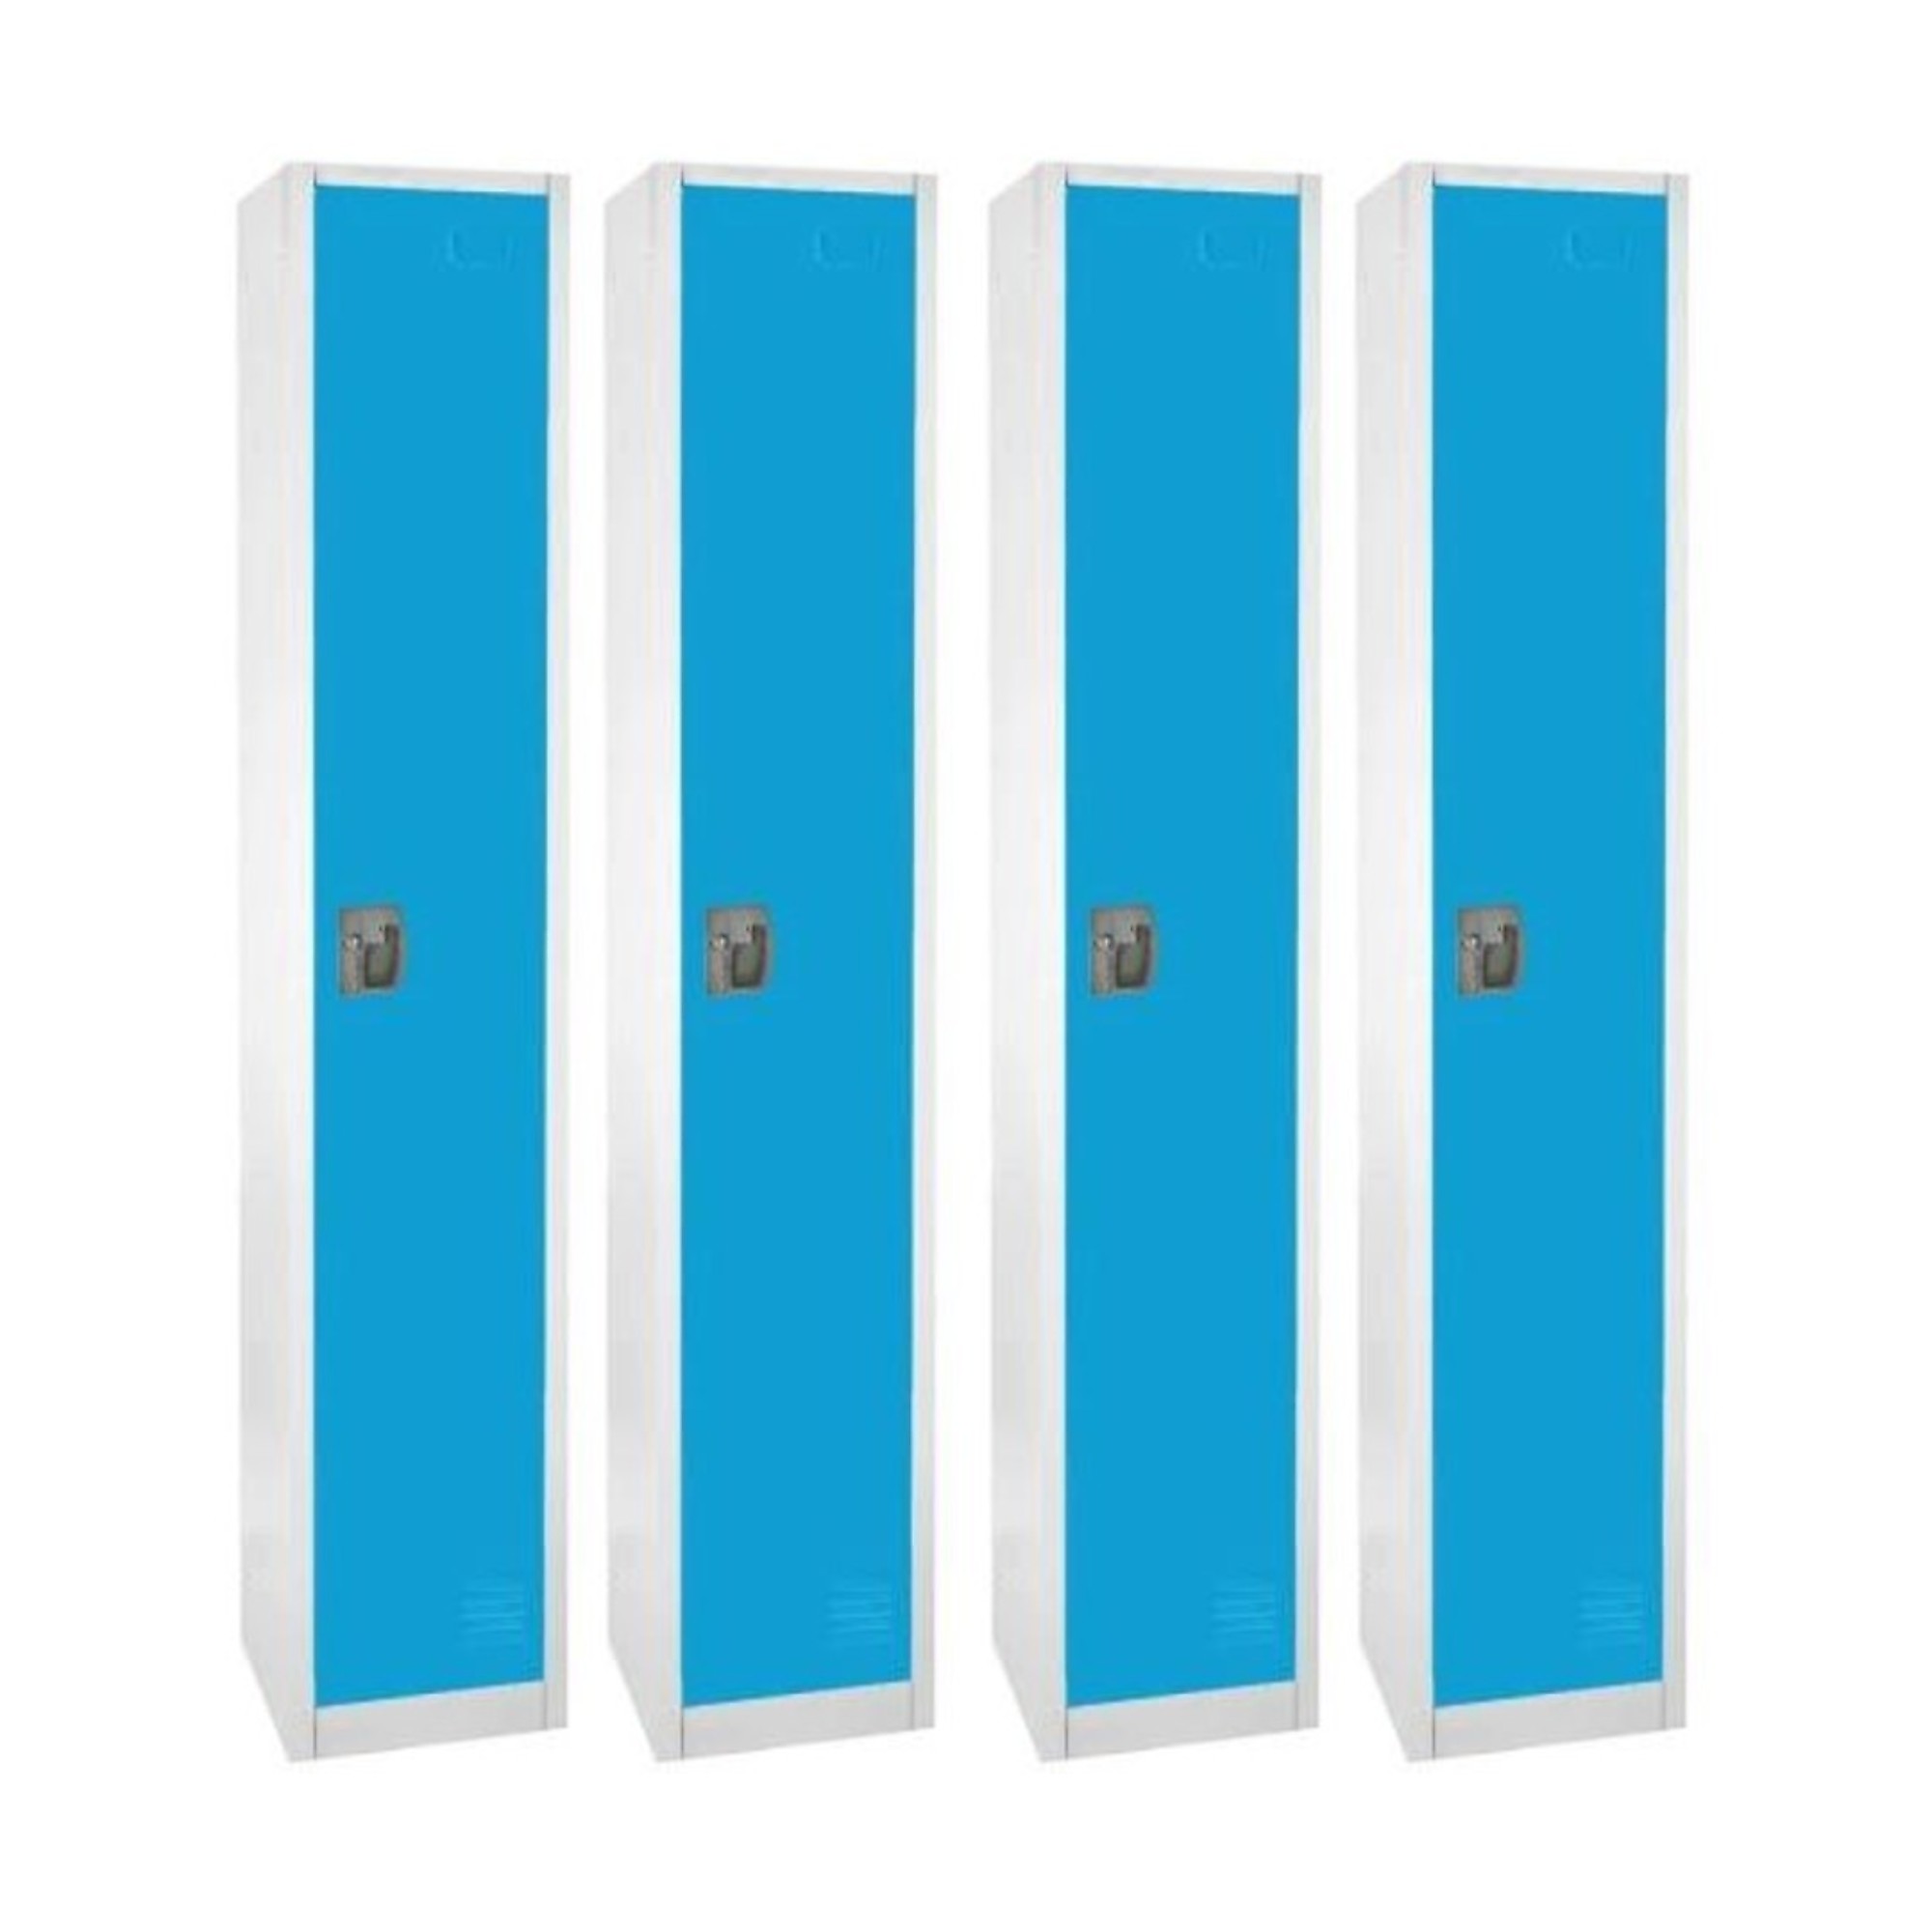 Alpine, 72Inch H 1-Tier Steel Storage Locker, Blue, 4-Pack, Height 72 in, Width 12 in, Color Blue, Model ADI629-201-BLU-4PK